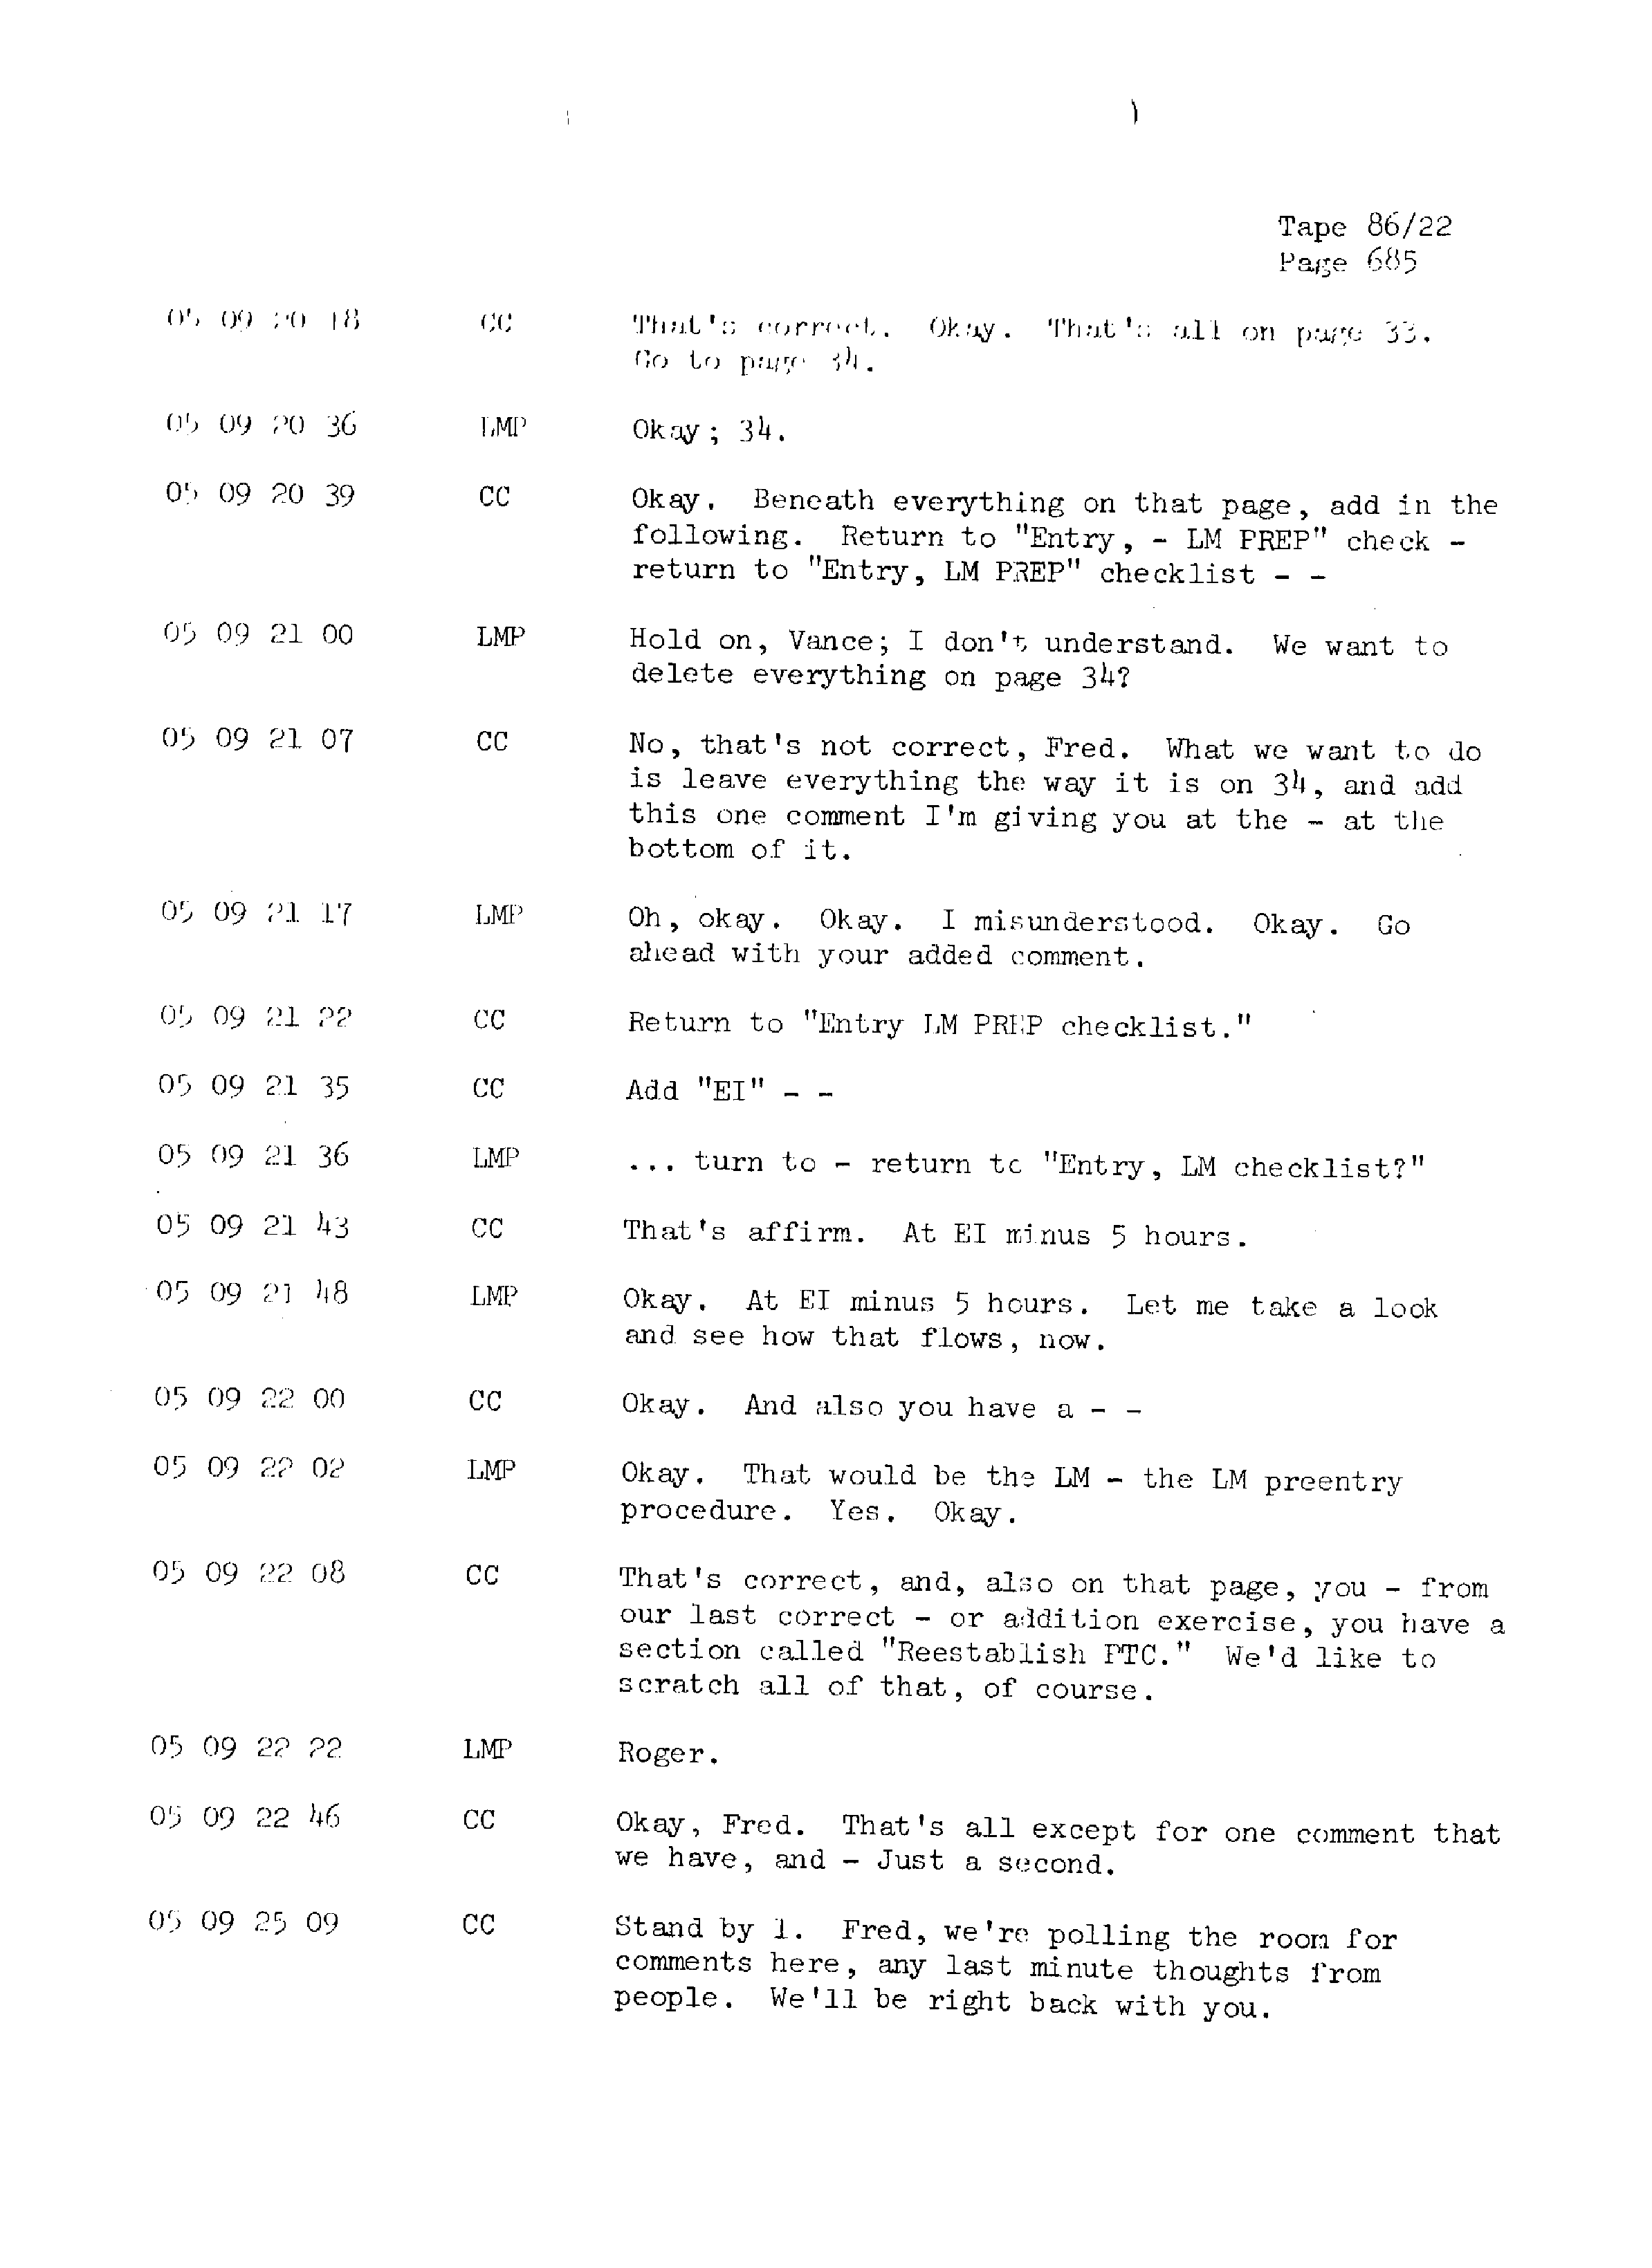 Page 692 of Apollo 13’s original transcript